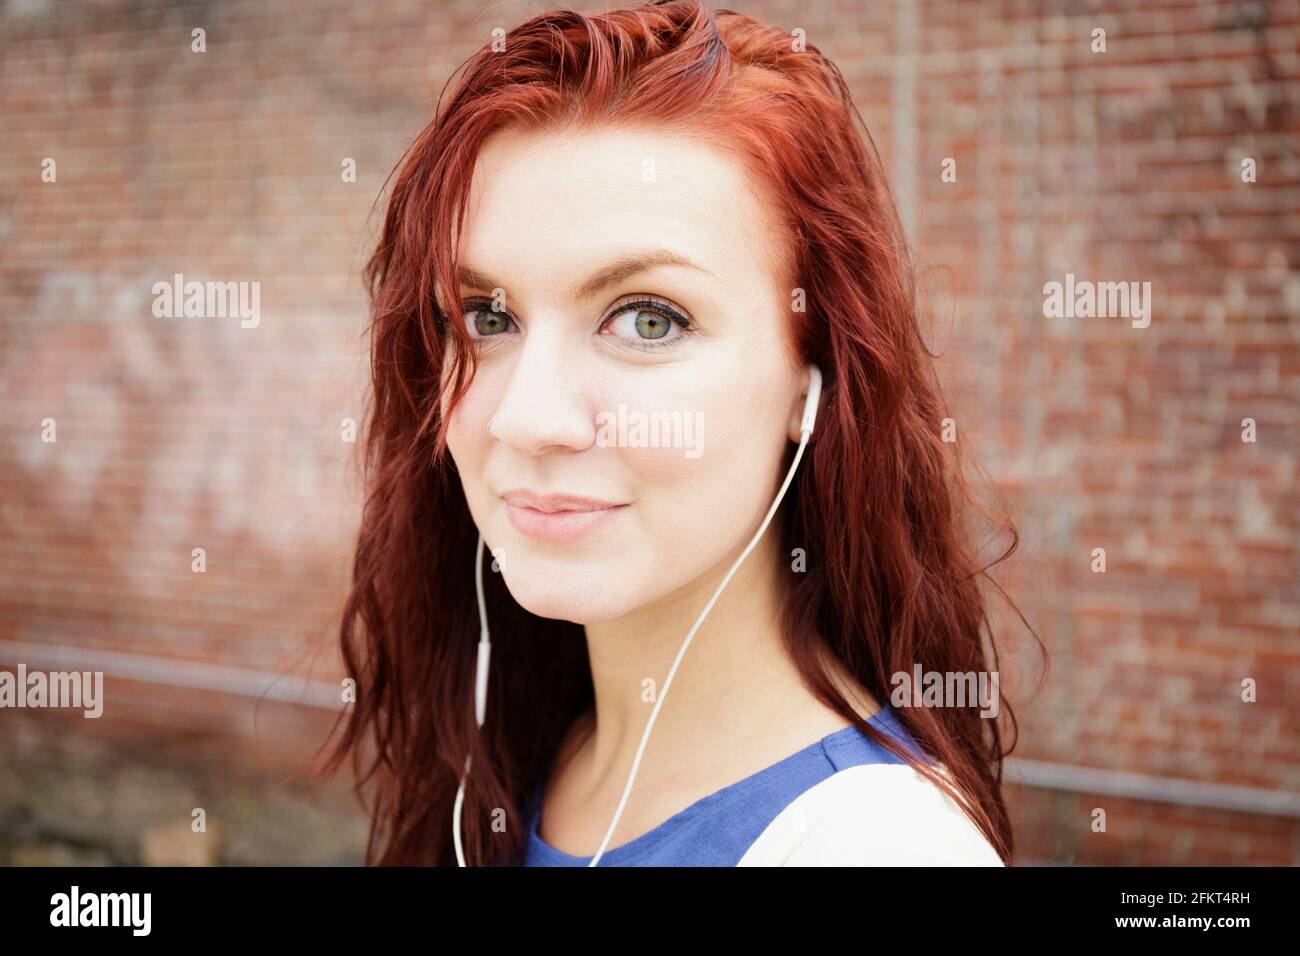 Ritratto di giovane donna con lunghi capelli rossi, indossa gli auricolari, close-up Foto Stock